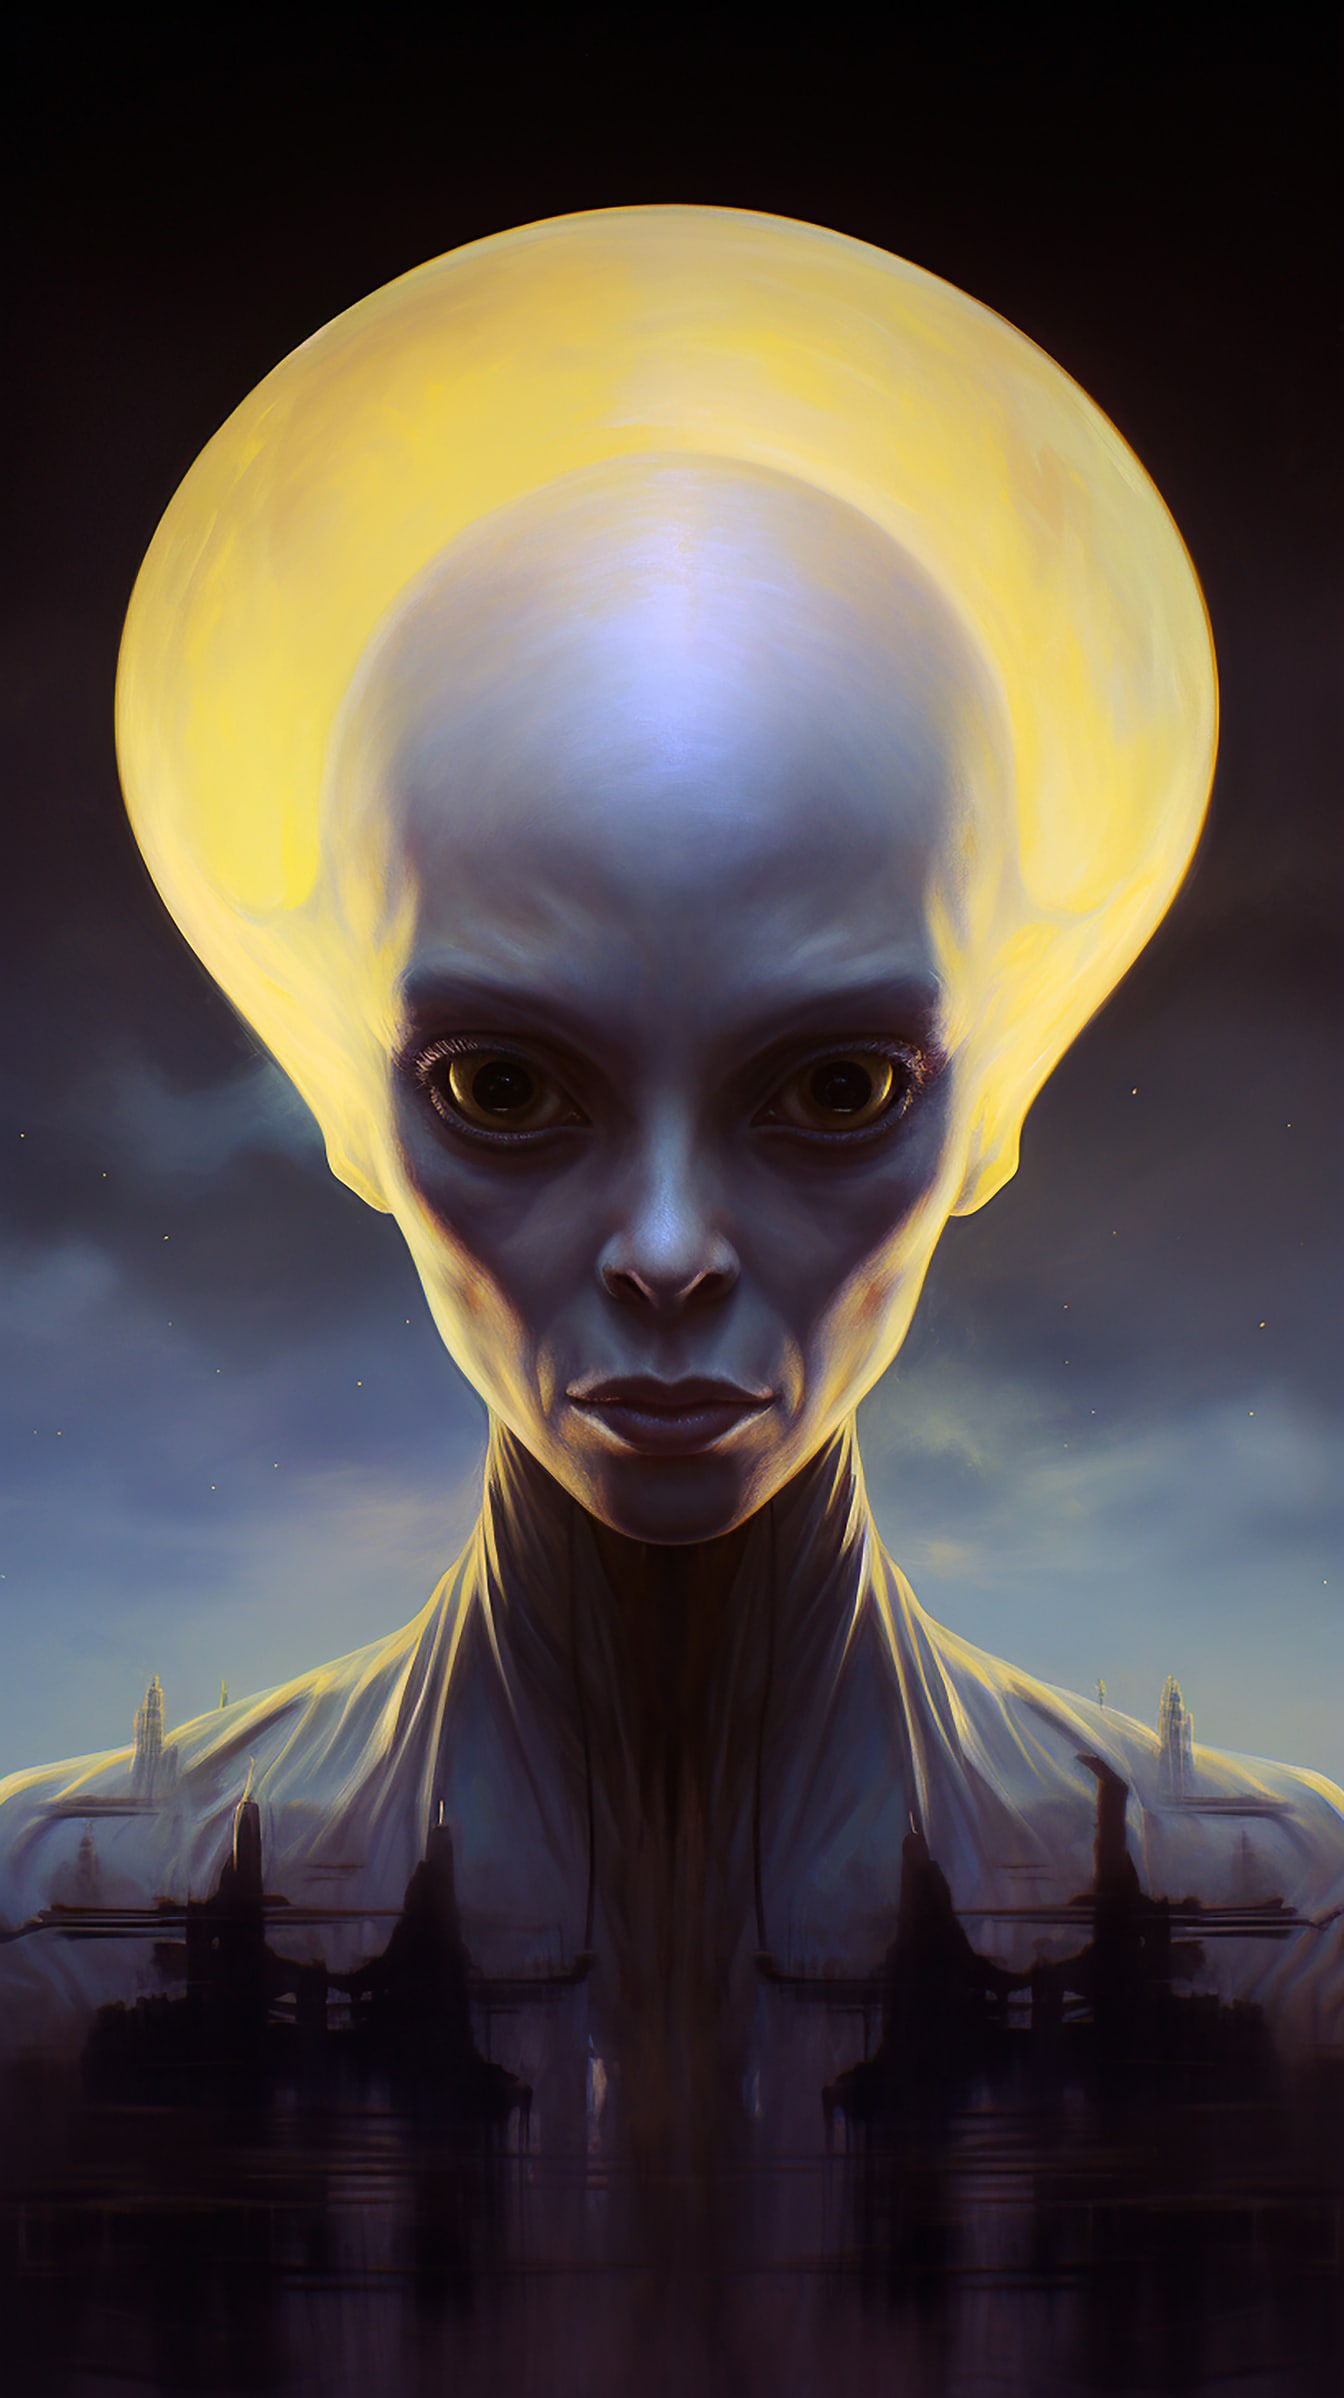 Retrato da criatura alienígena humanoide com cabeça grande